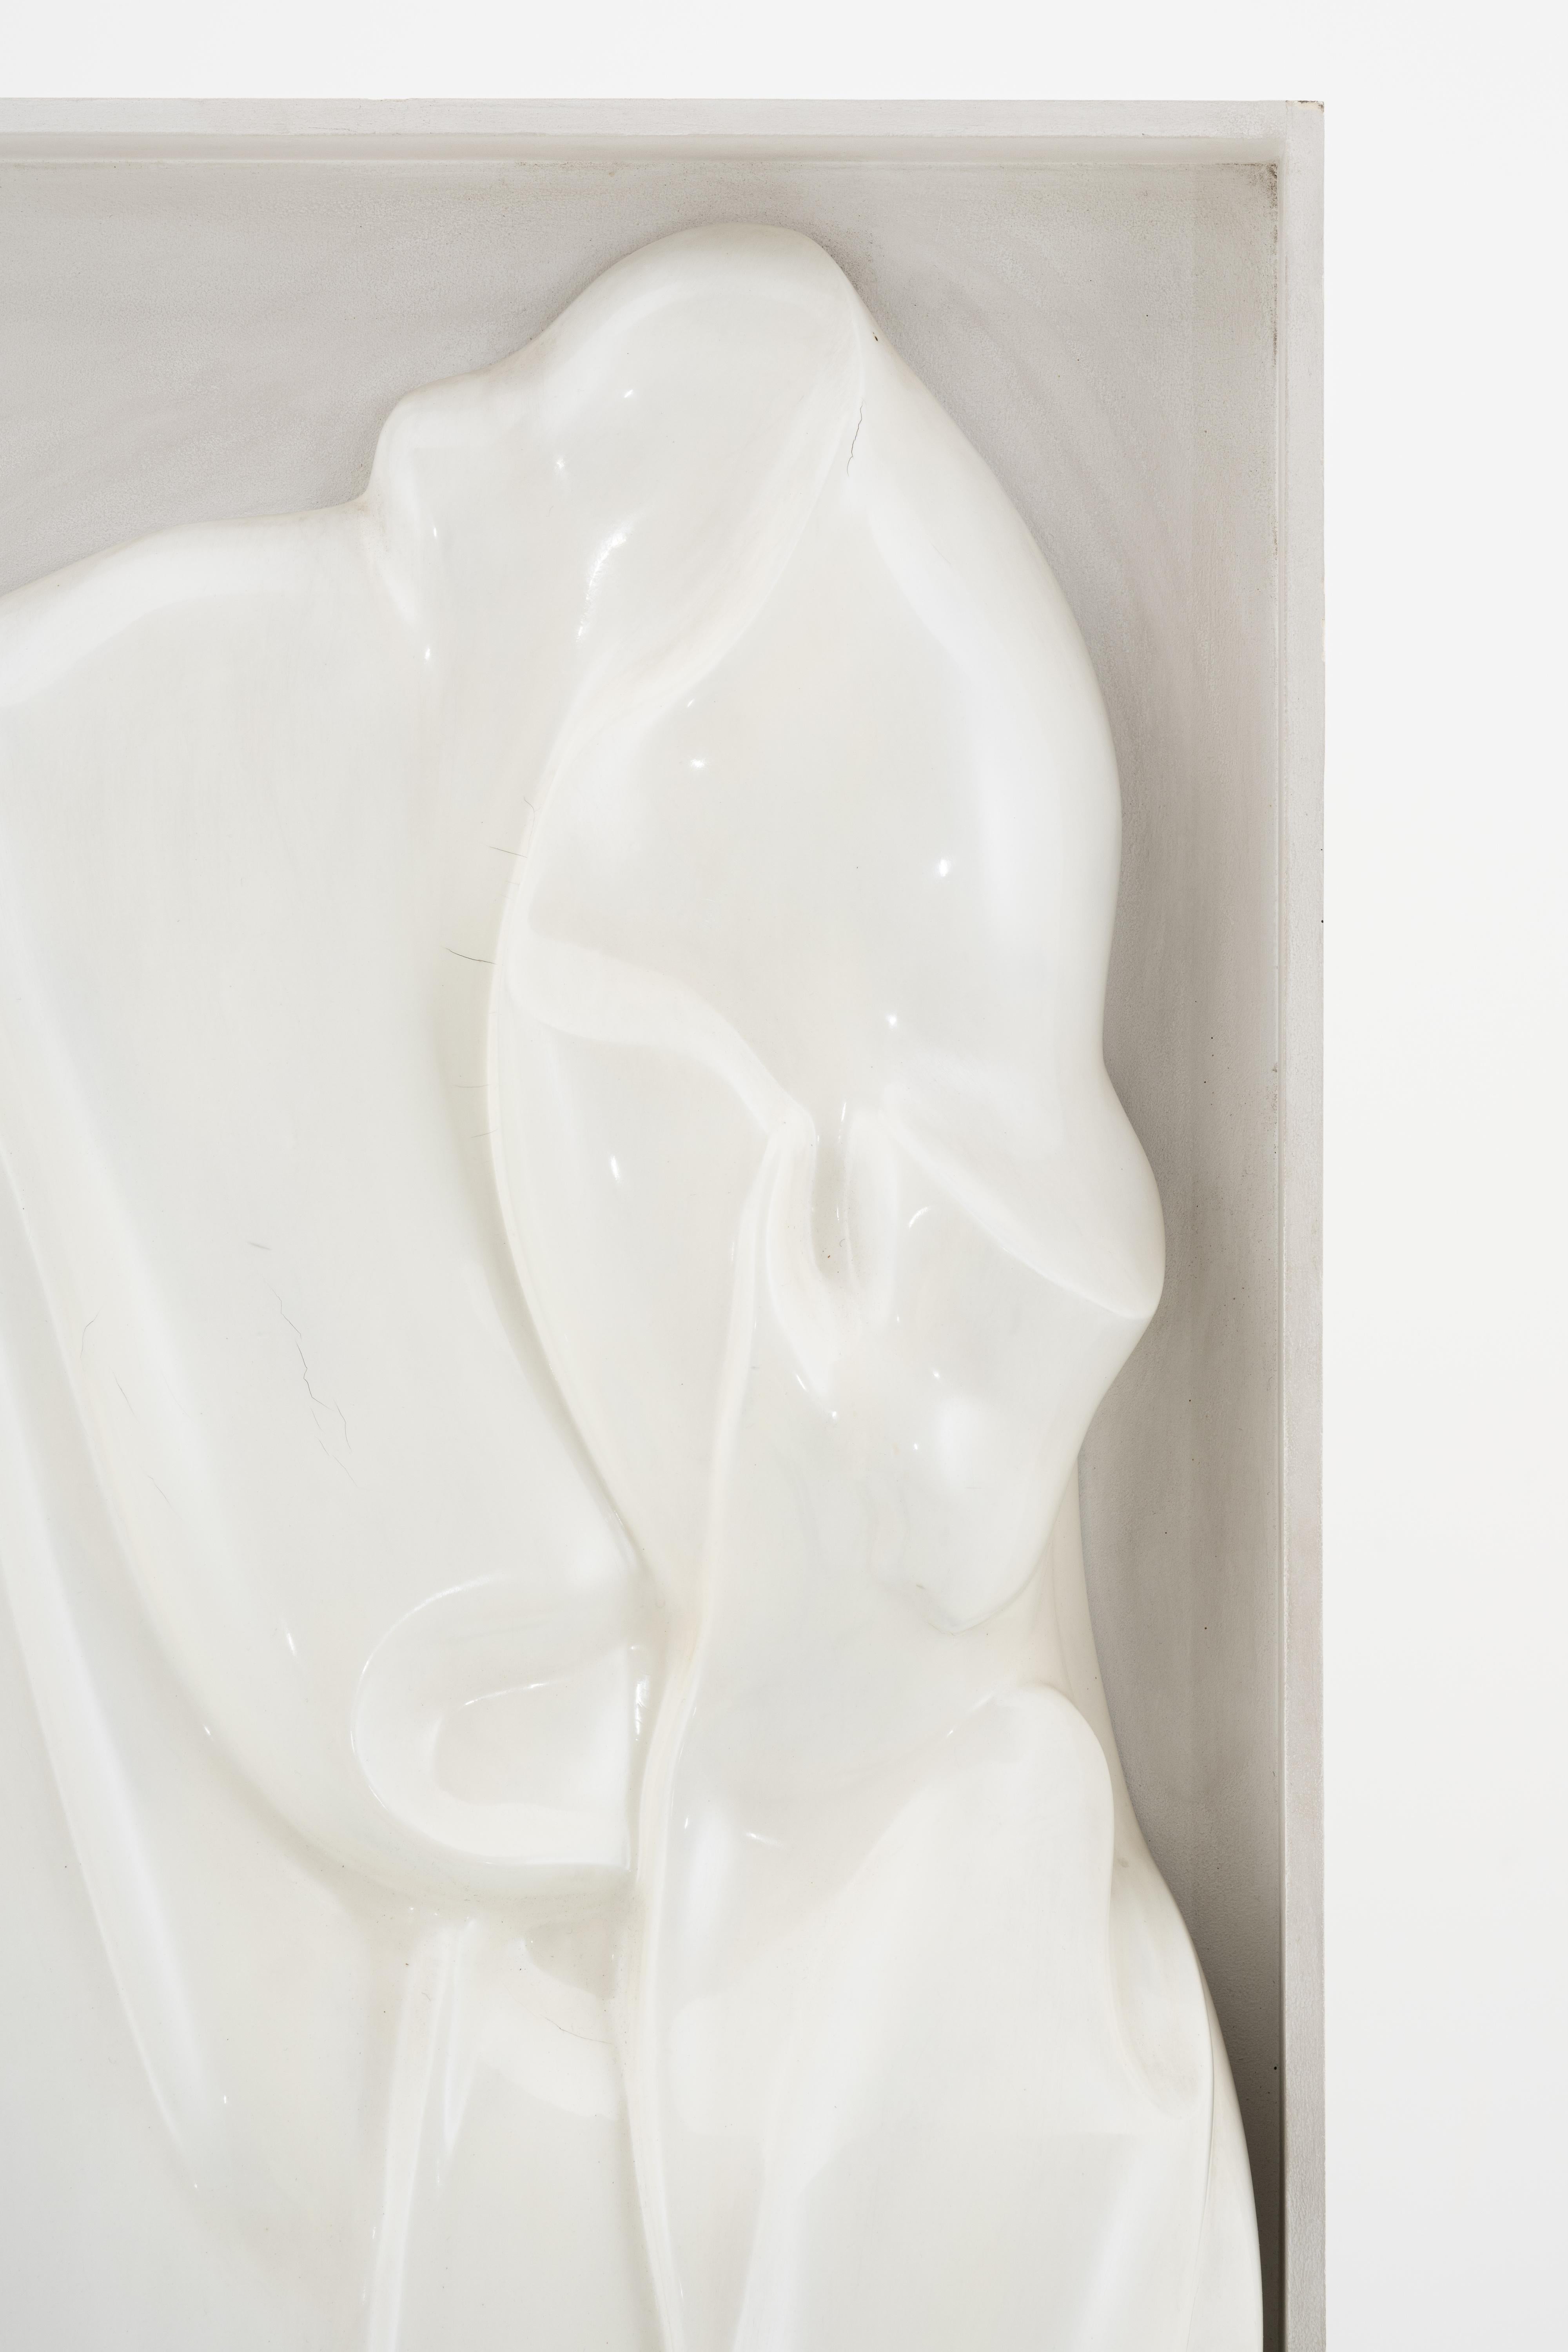 César (1921 - 1998)
''Expansion n° 55'', 1975
Résine, laine de verre et laque acrylique 108 x 58 x 18 cm
Certificat des archives de Durand-Ruel
N° 2.198 (archives César)

César Baldaccini, communément appelé César, est un sculpteur français de renom